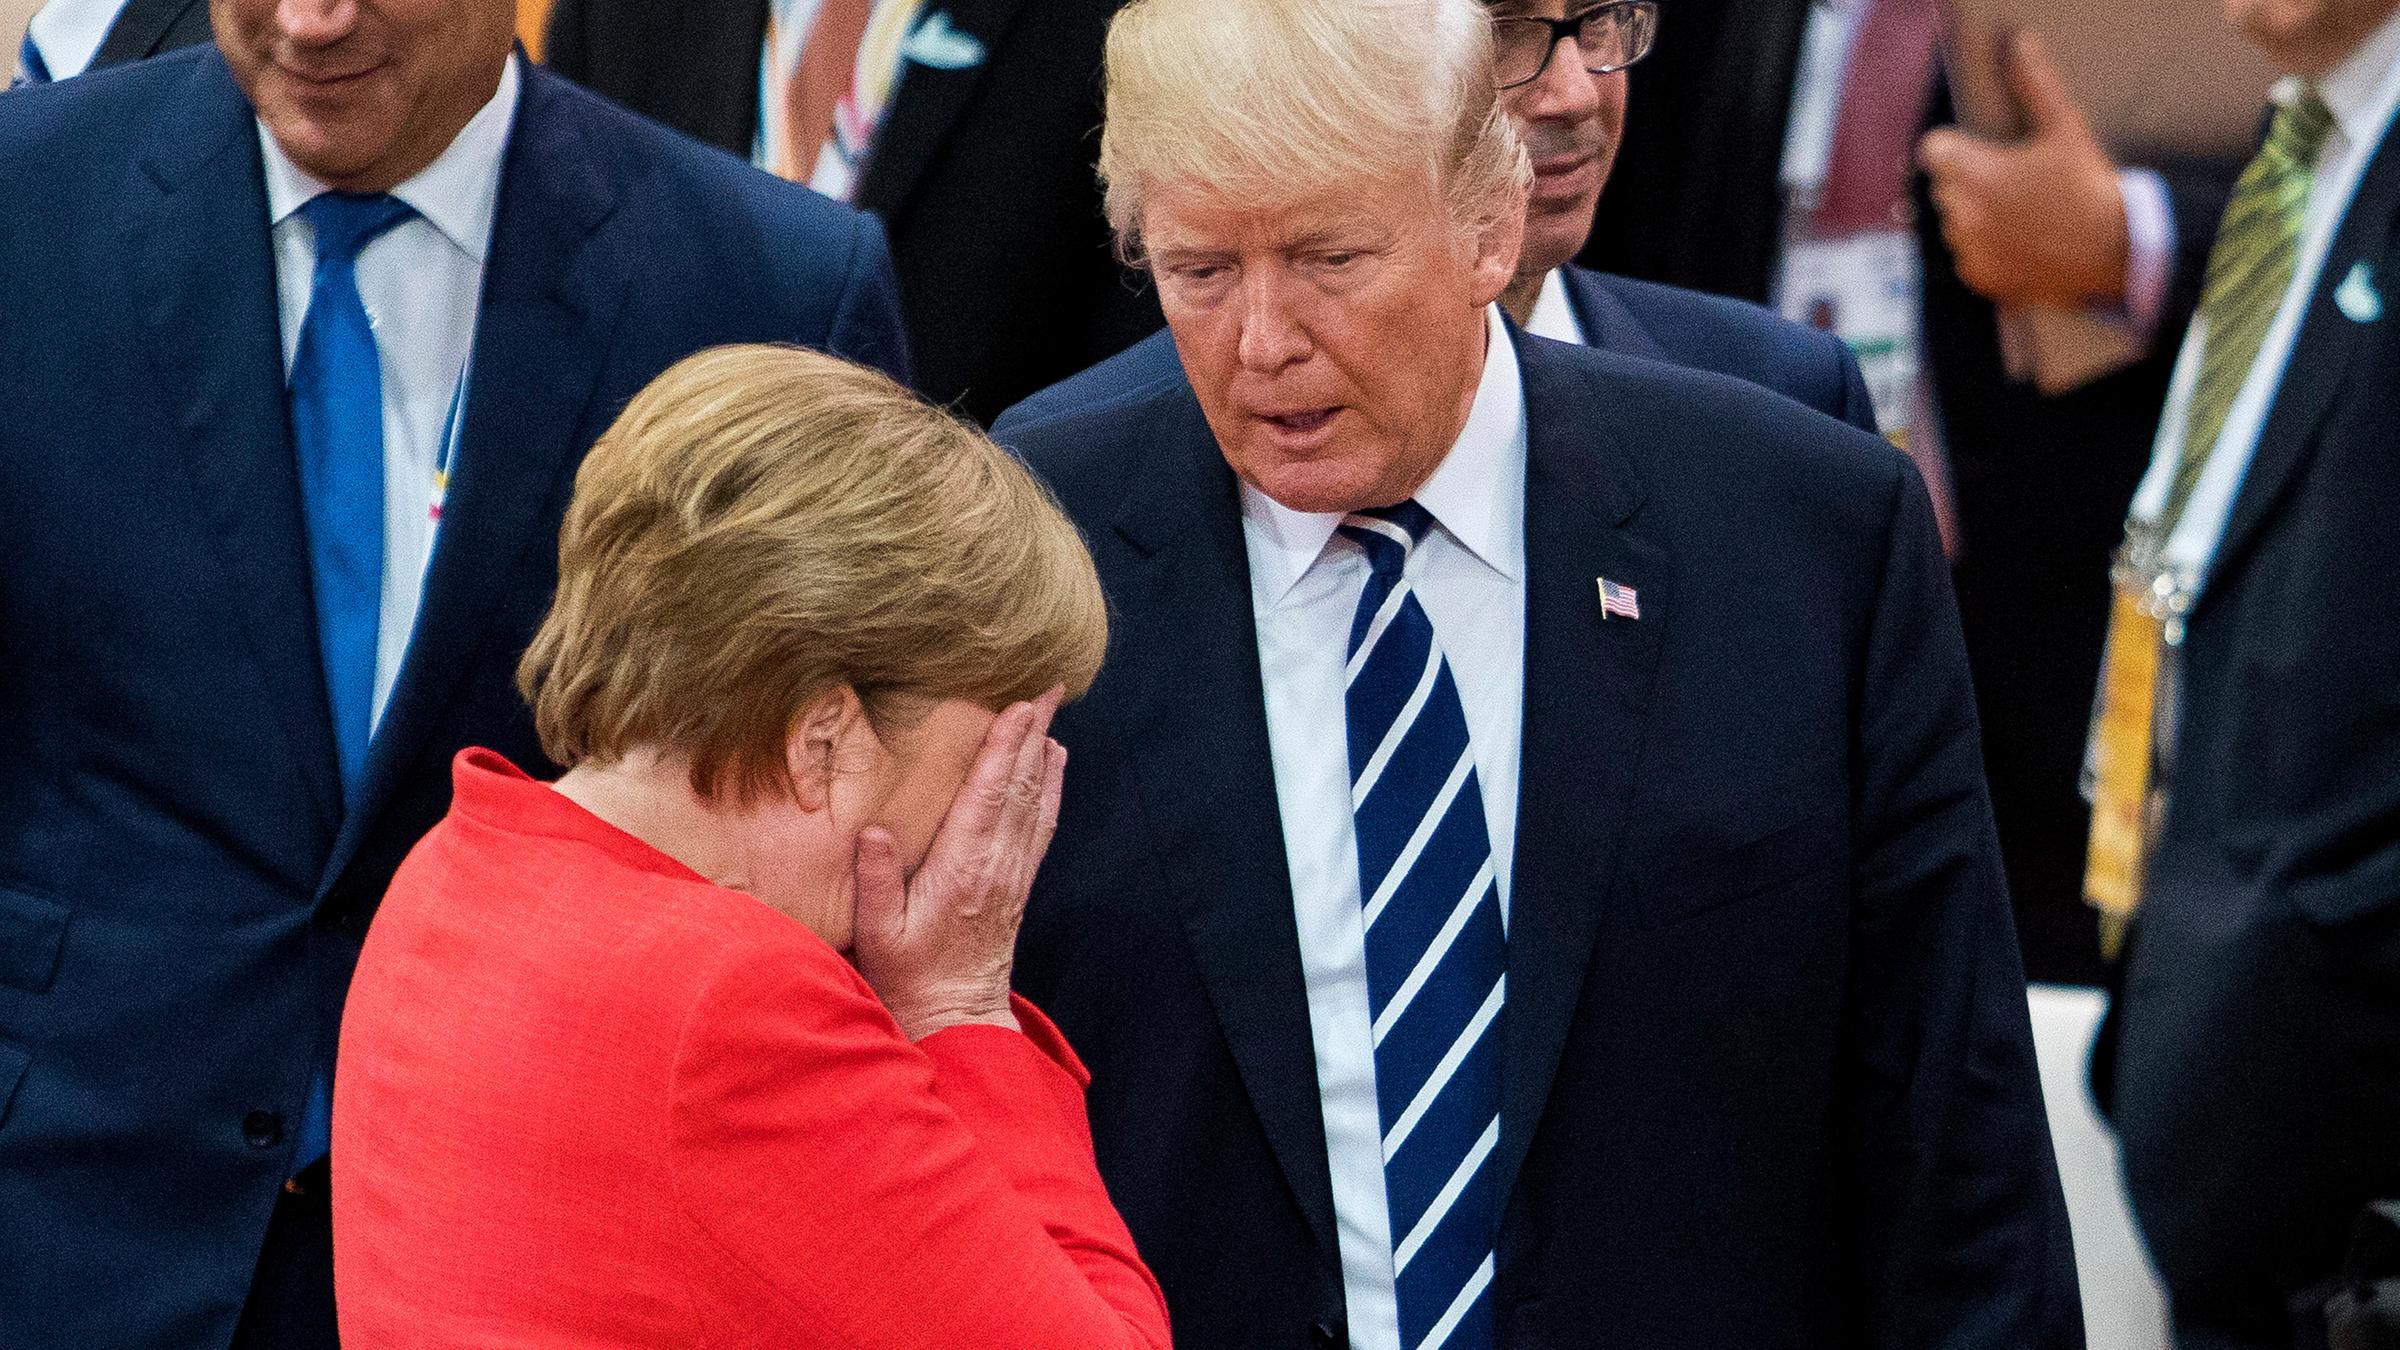 Das Bild zeigt Angela Merkel wie sie im Gespräch mit Donald Trump die Hände vorm Gesicht verschließt.